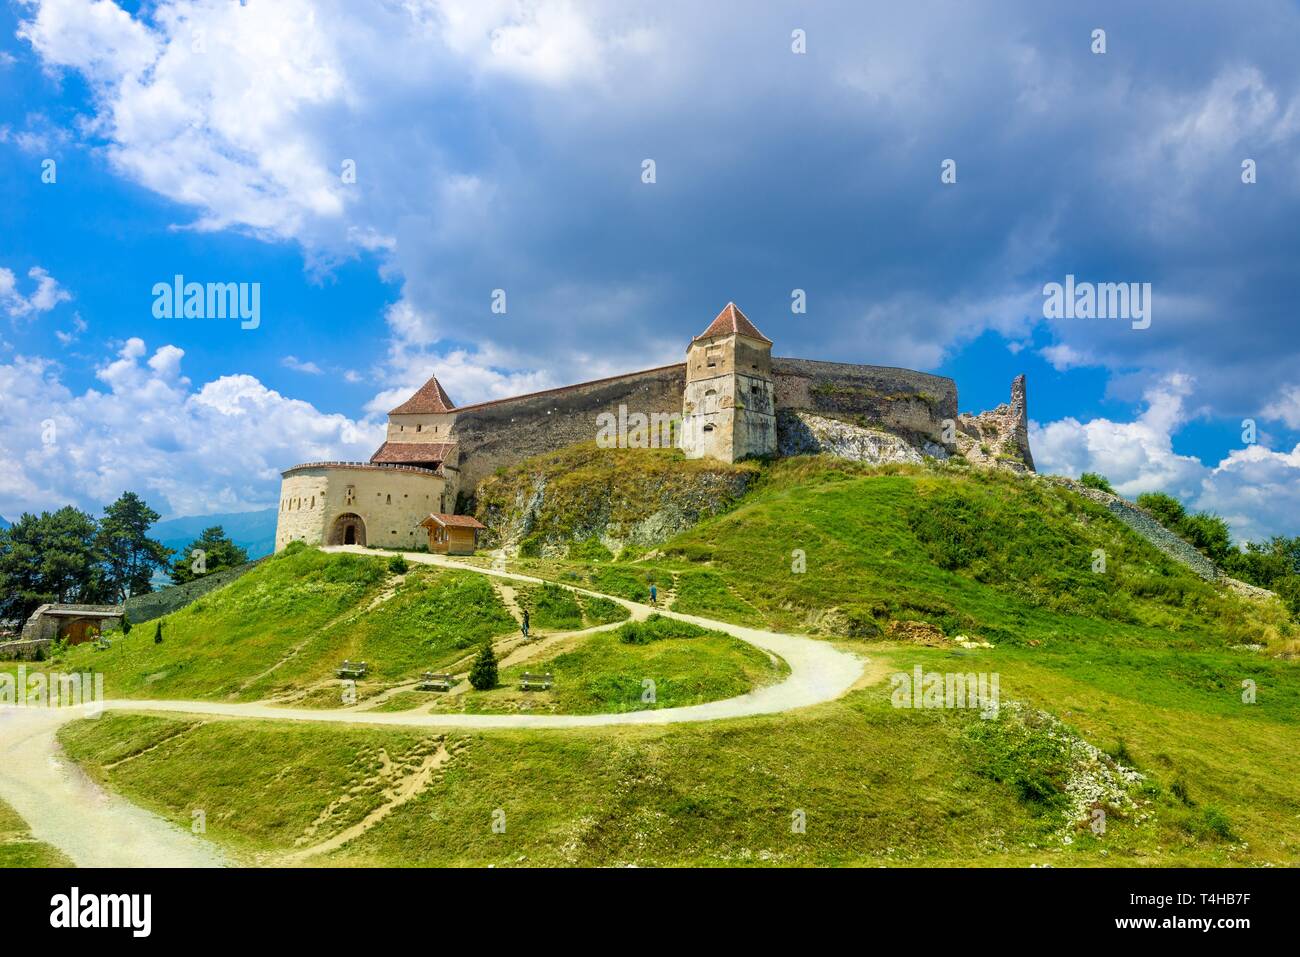 Medieval fortress (citadel) in Rasnov city, Brasov, Transylvania, Romania Stock Photo